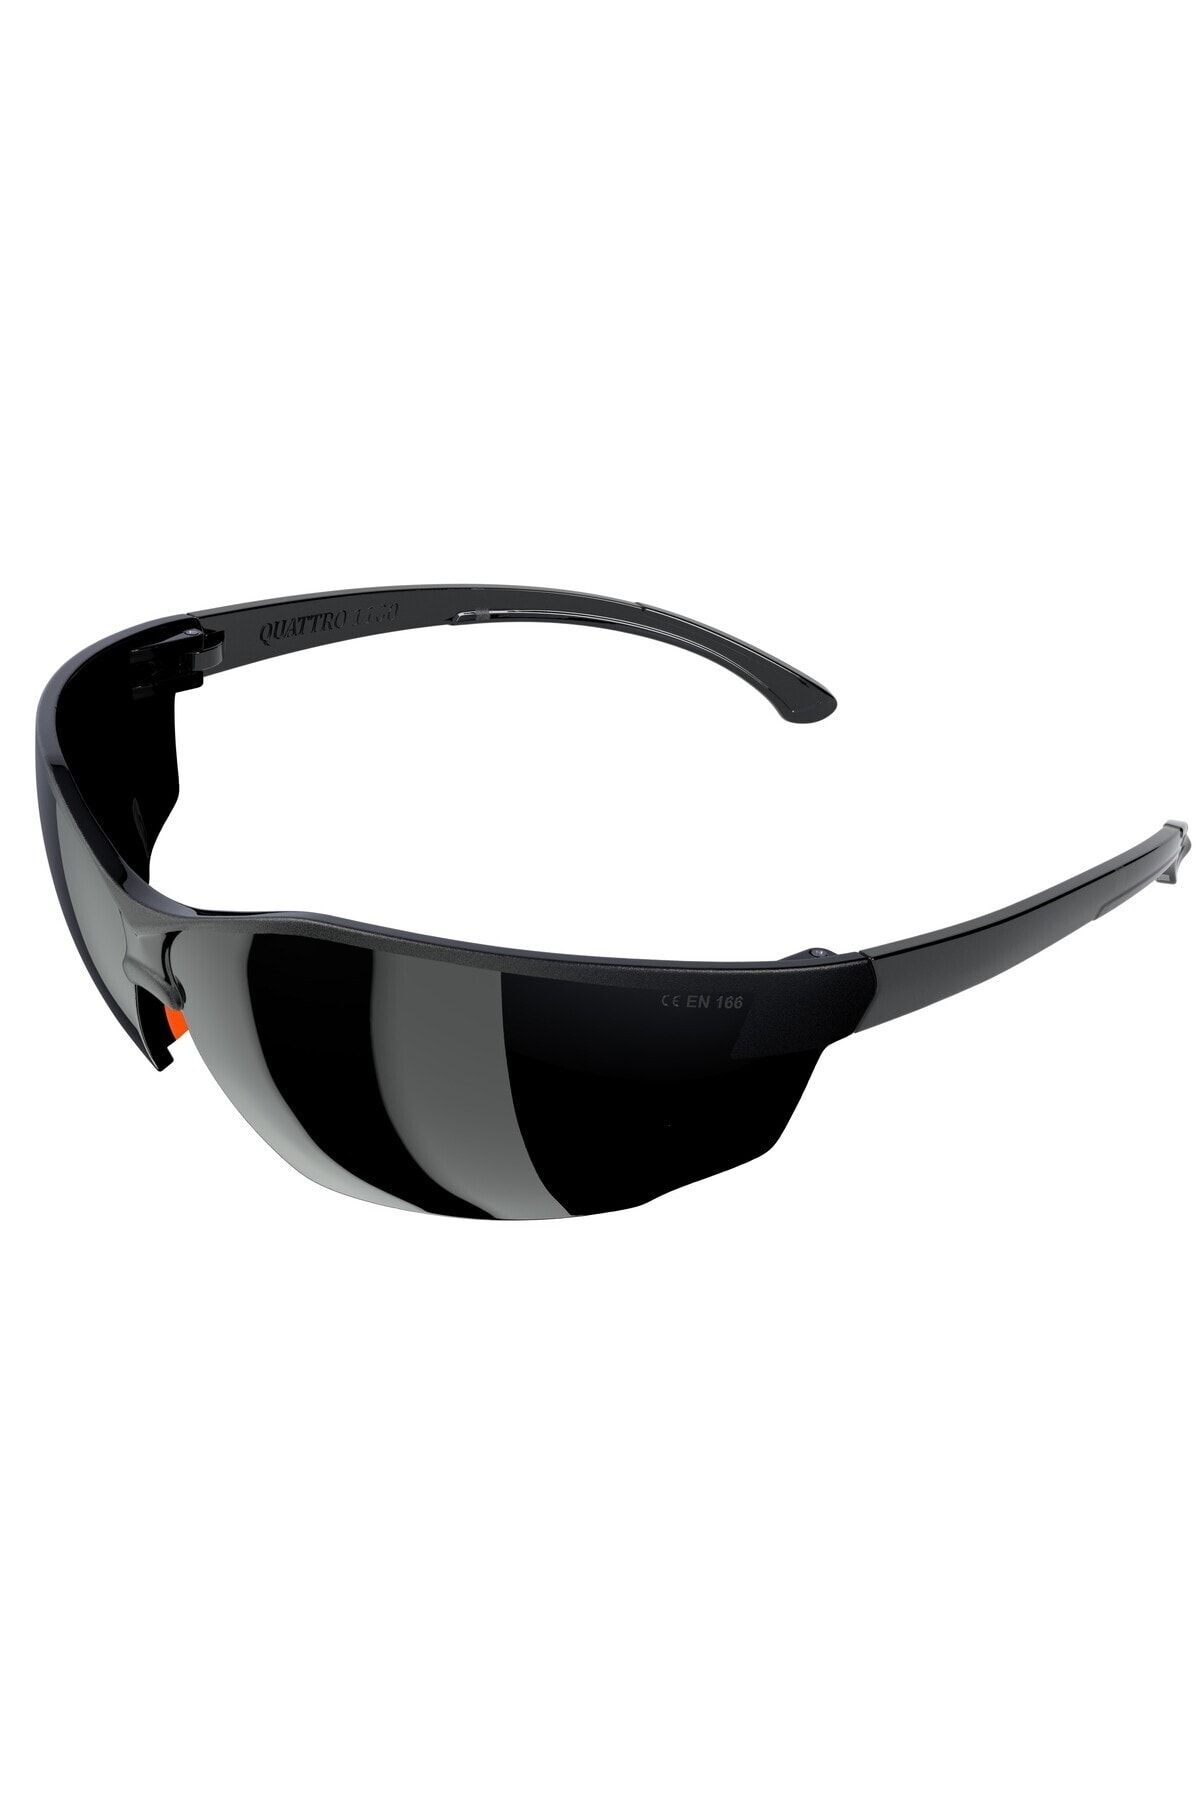 Baymax Çapak Gözlüğü Koruyucu Gözlük Iş Gözlüğü S-1100 Siyah